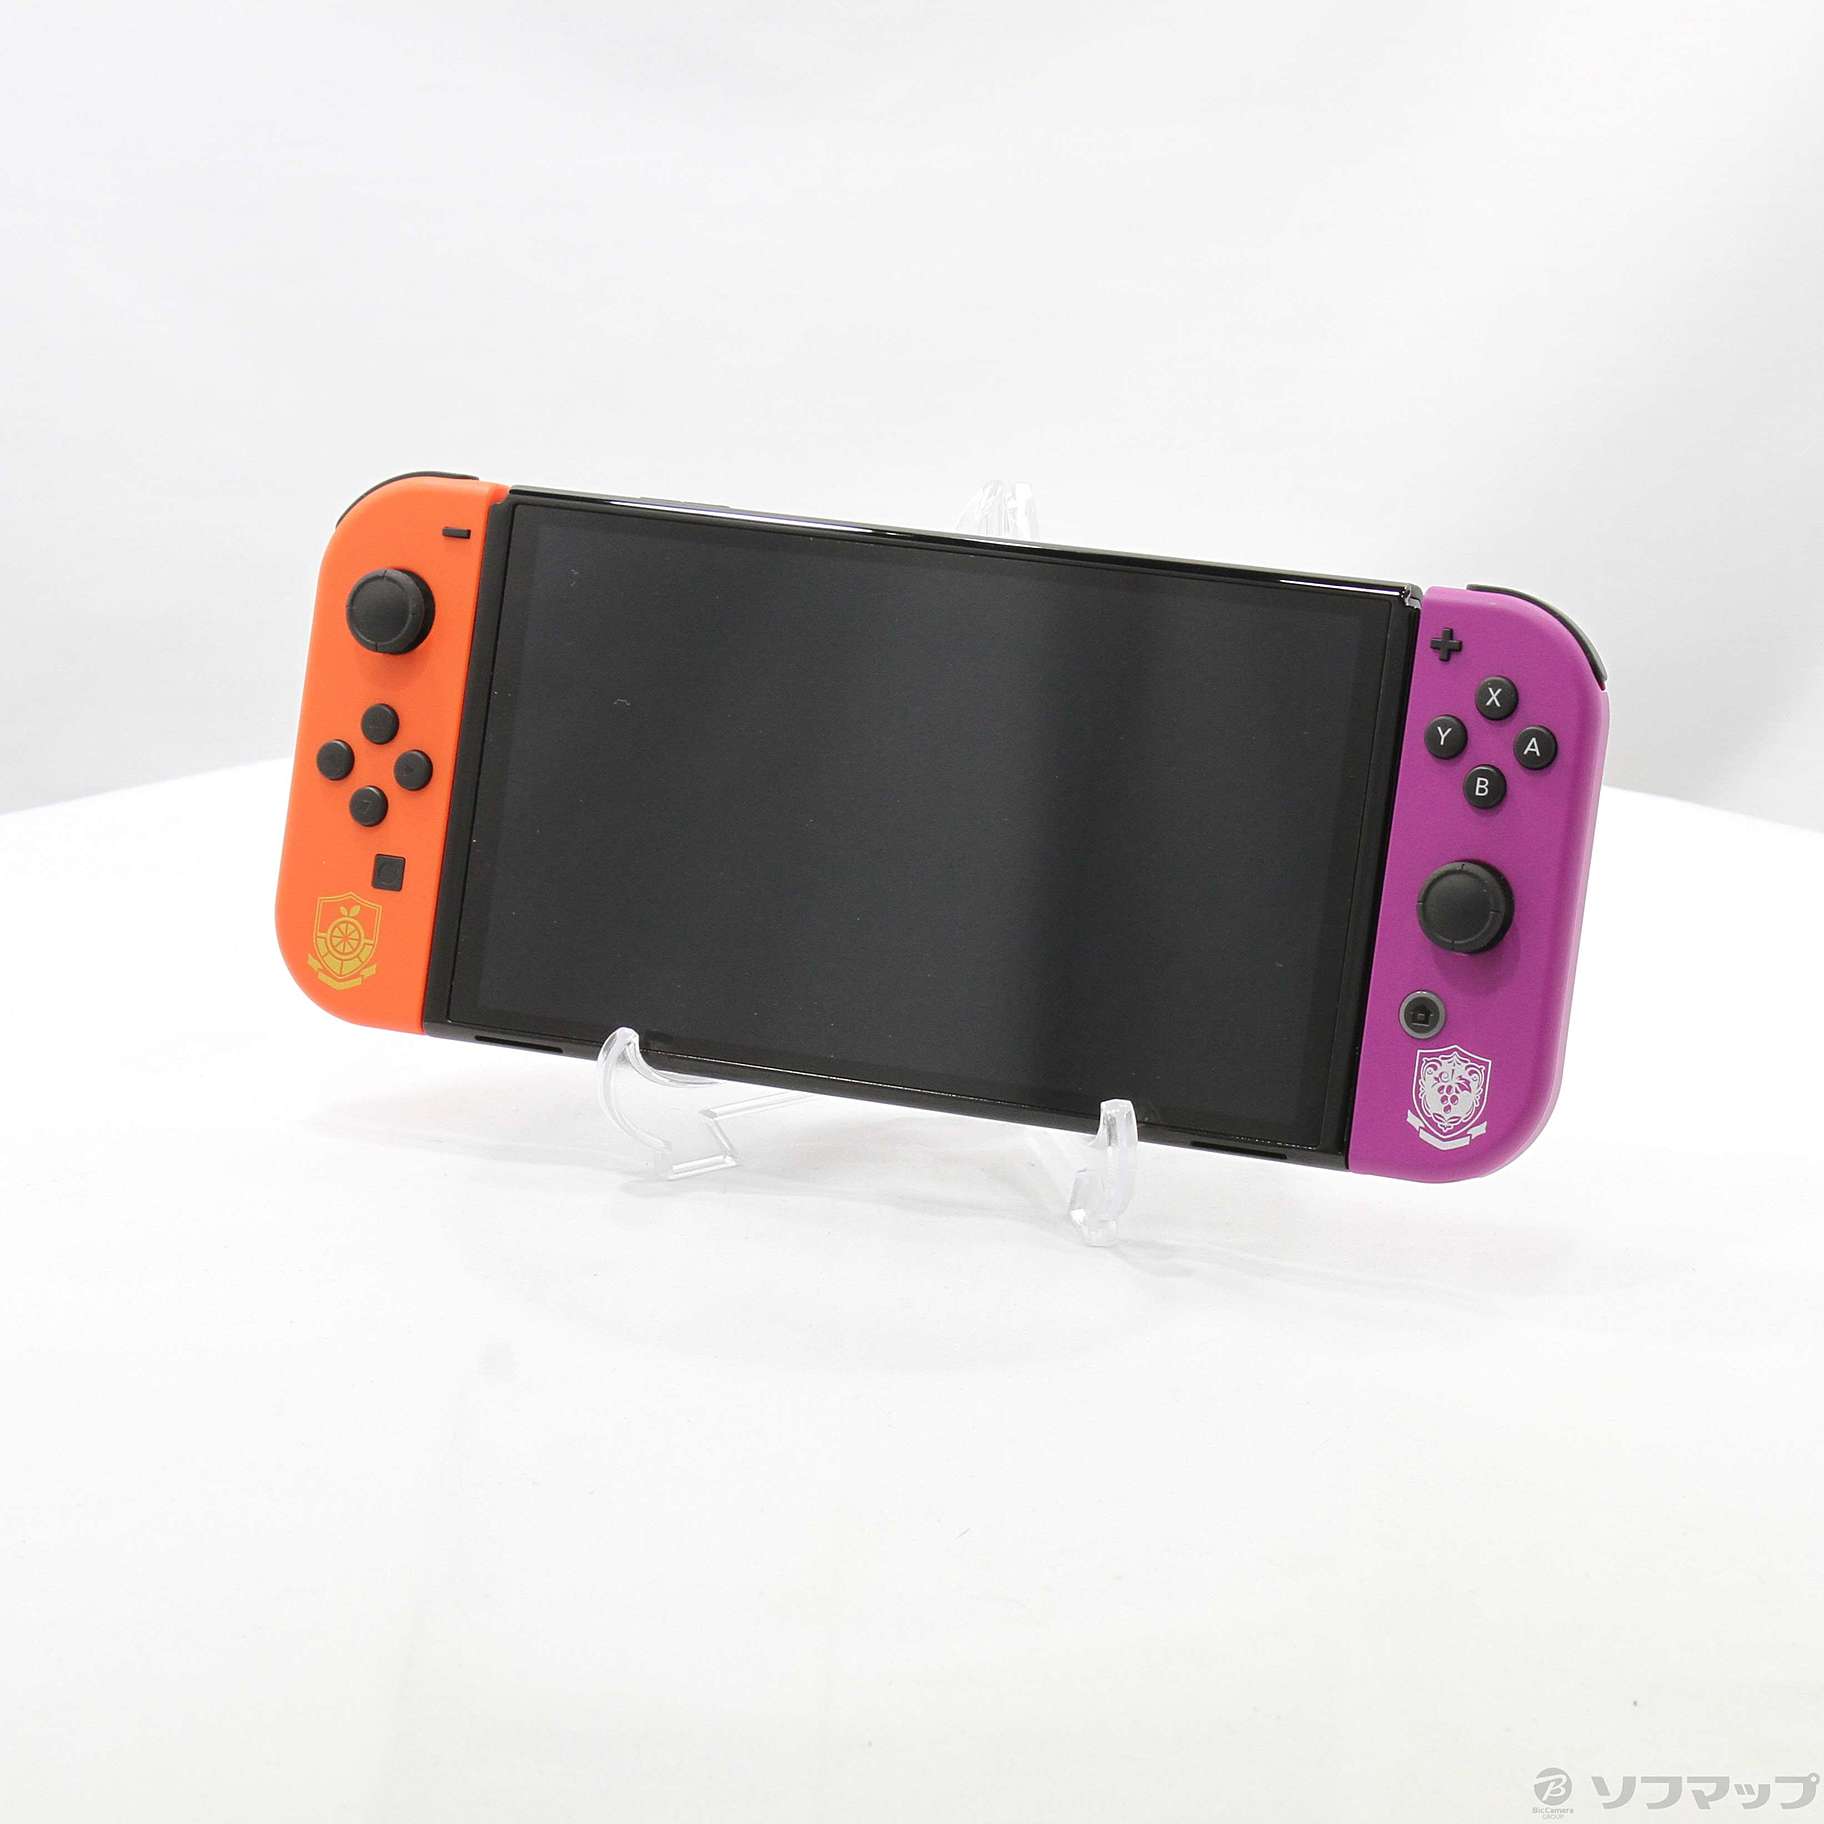 中古品〕 Nintendo Switch 有機ELモデル スカーレット・バイオレット 